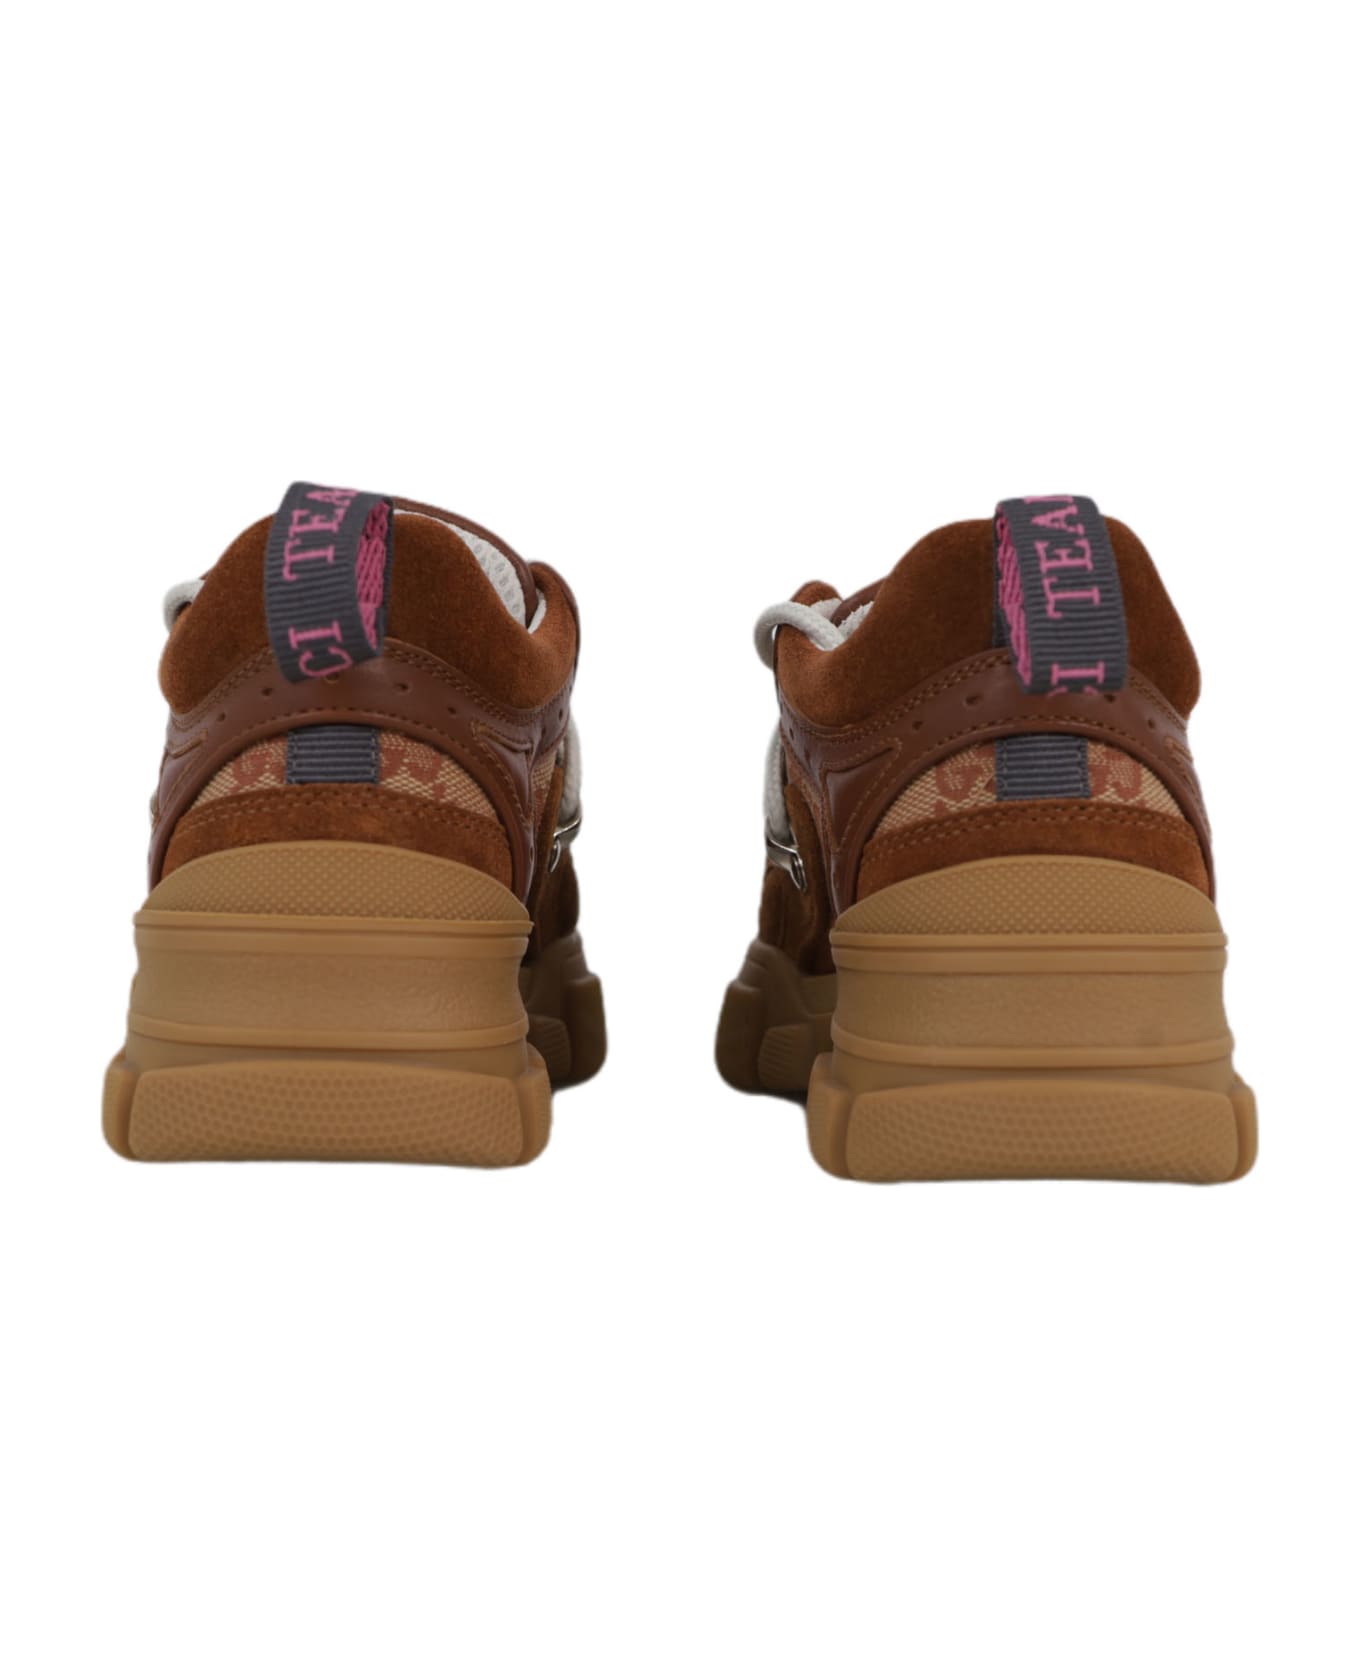 Gucci Flashtrek Sneakers - Brown シューズ